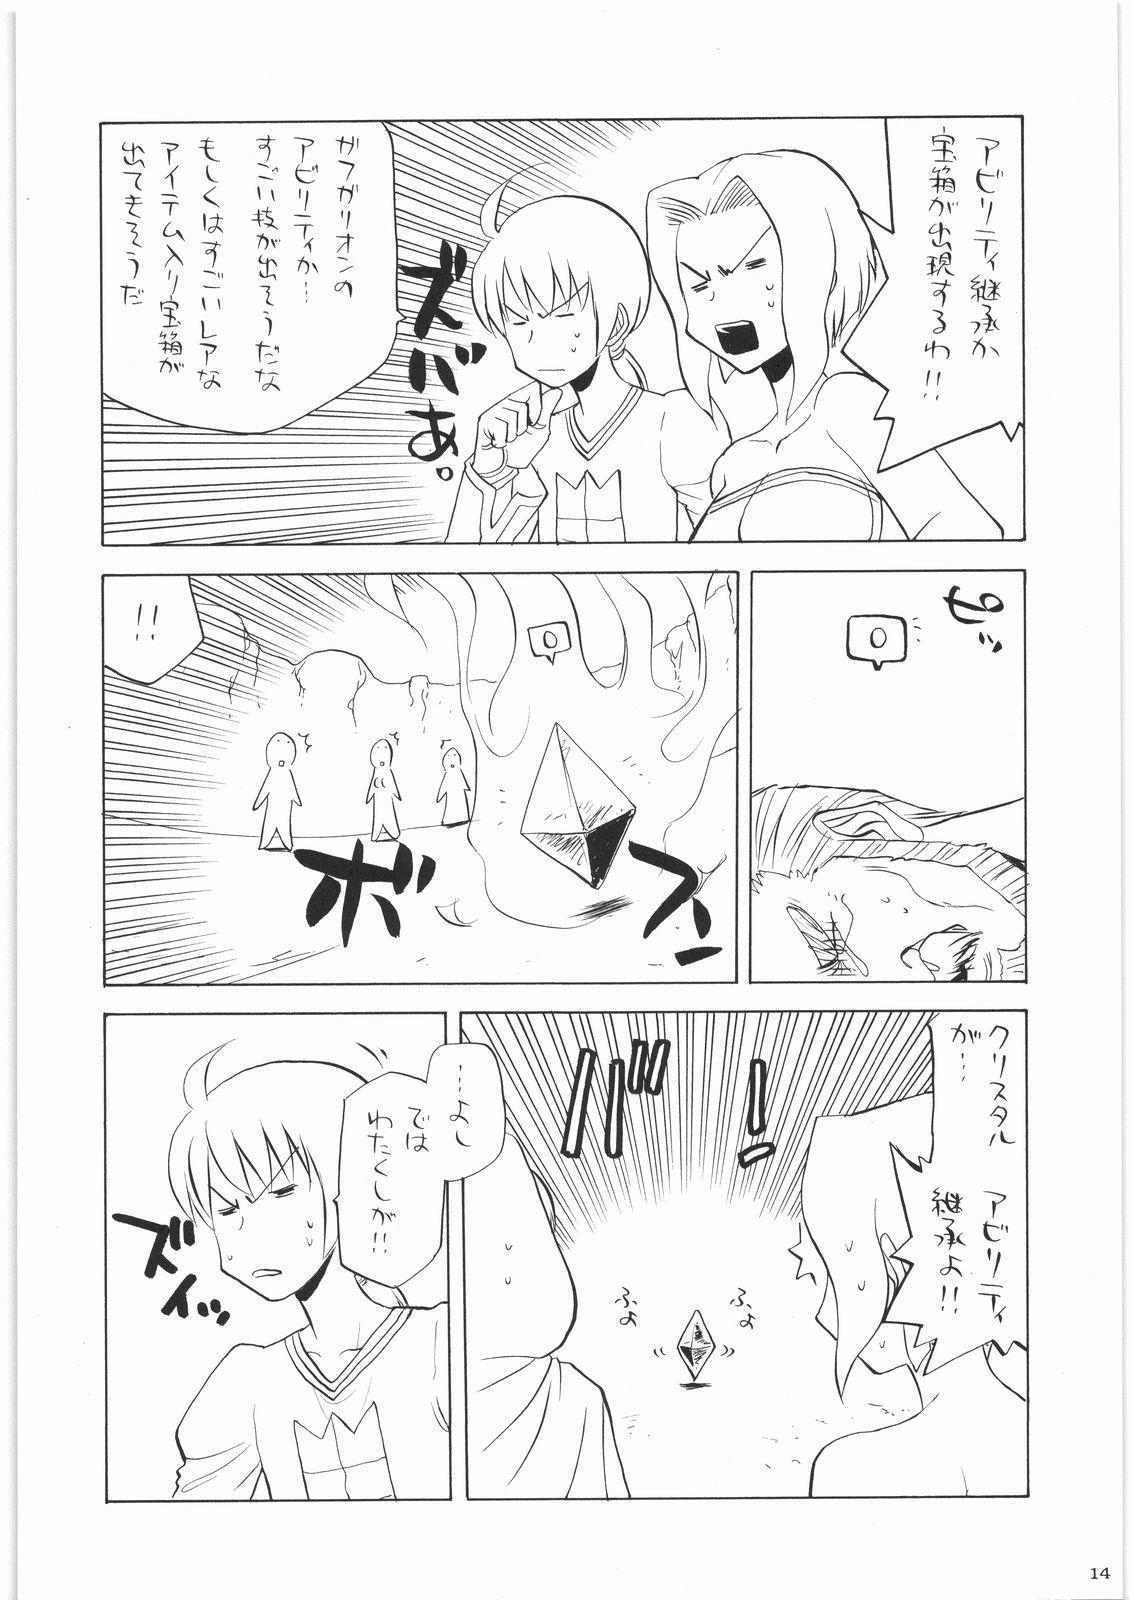 Amigos Oneesama Koushien - K-on Monster hunter Umineko no naku koro ni Step Fantasy - Page 13